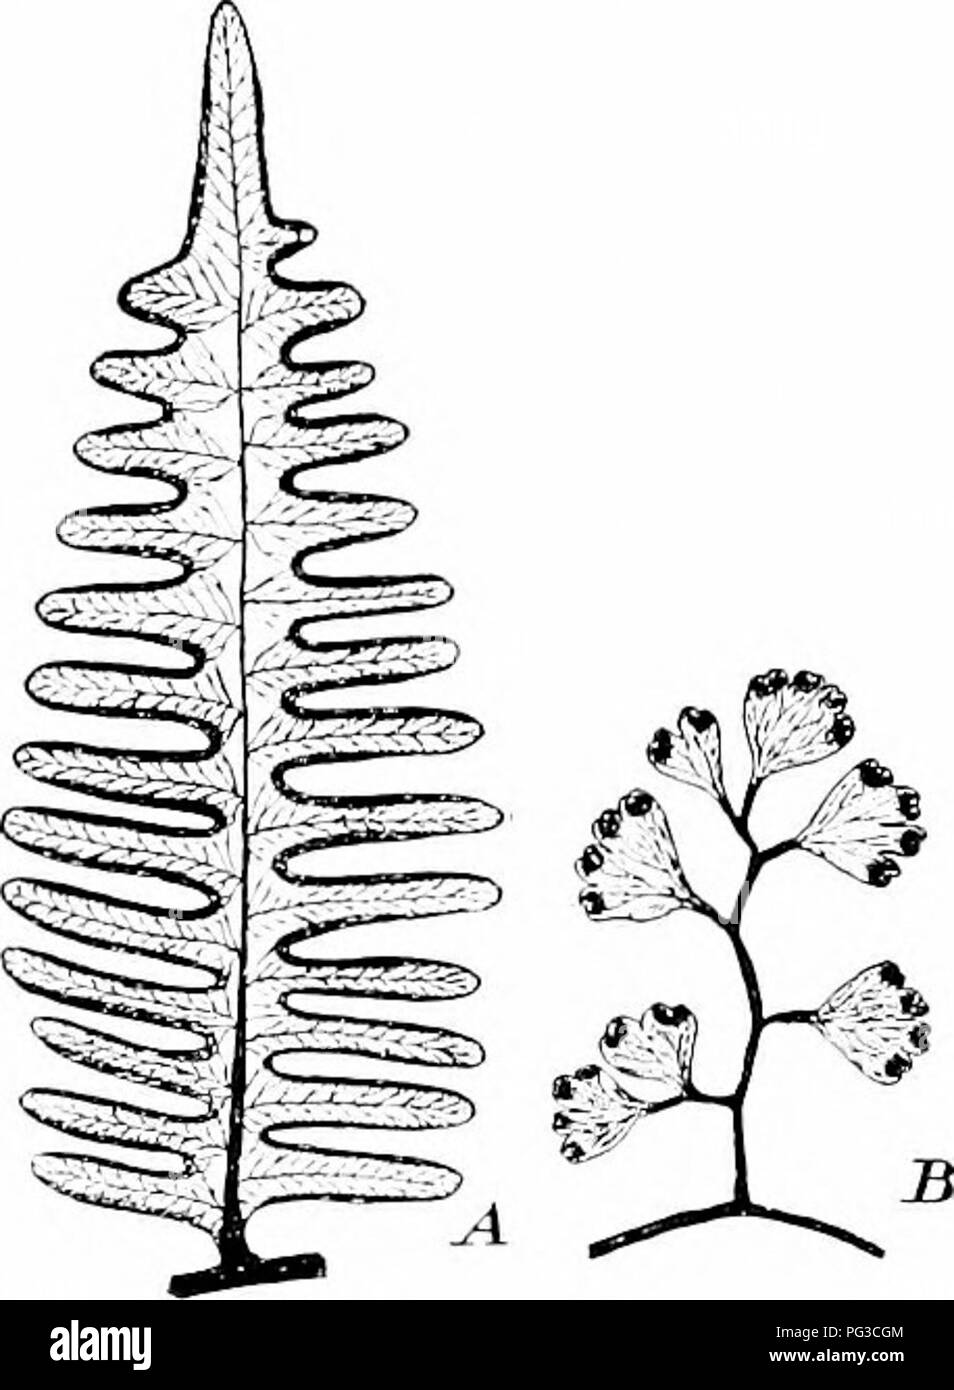 spore formation in fern